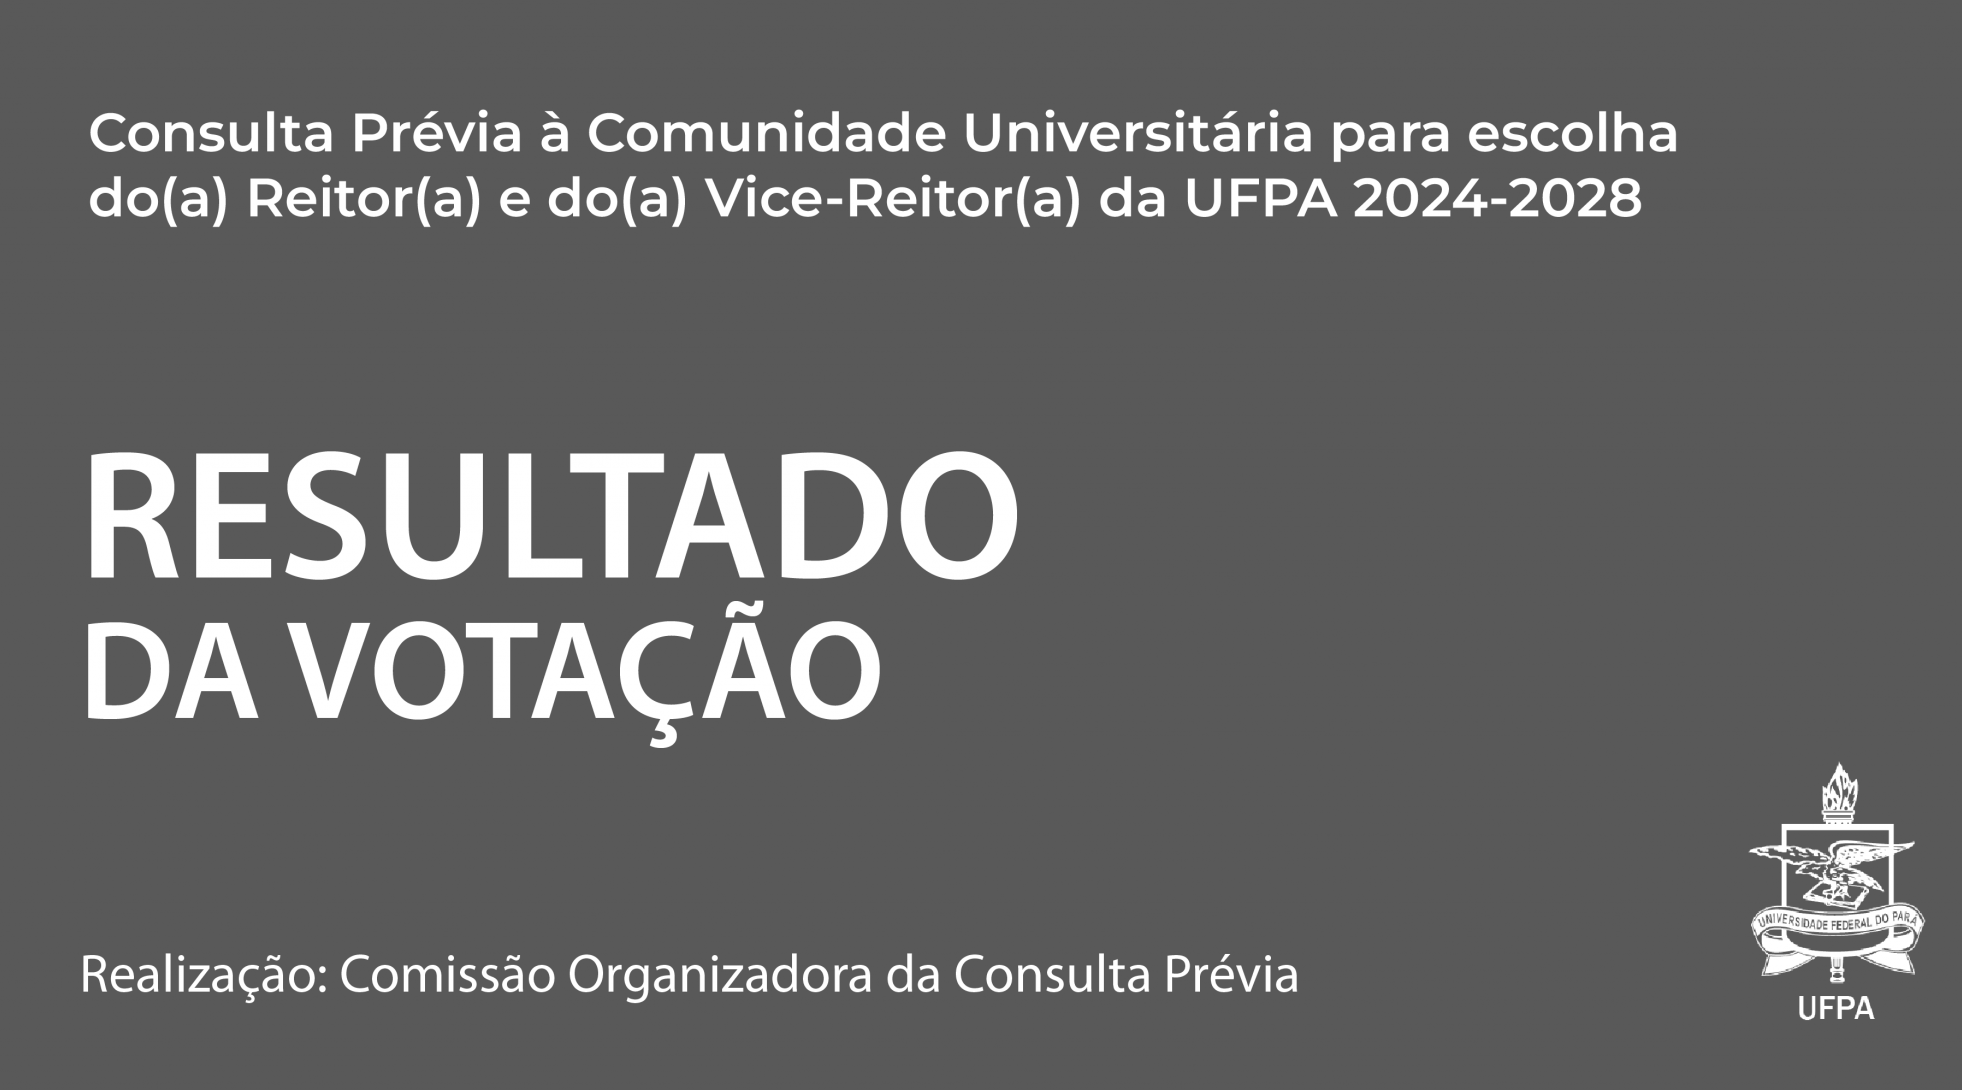 Gilmar Pereira da Silva e Loiane Prado Verbicaro vencem a consulta prévia á comunidade para a escolha de Reitor(a) e de Vice-Reitor(a) da UFPA